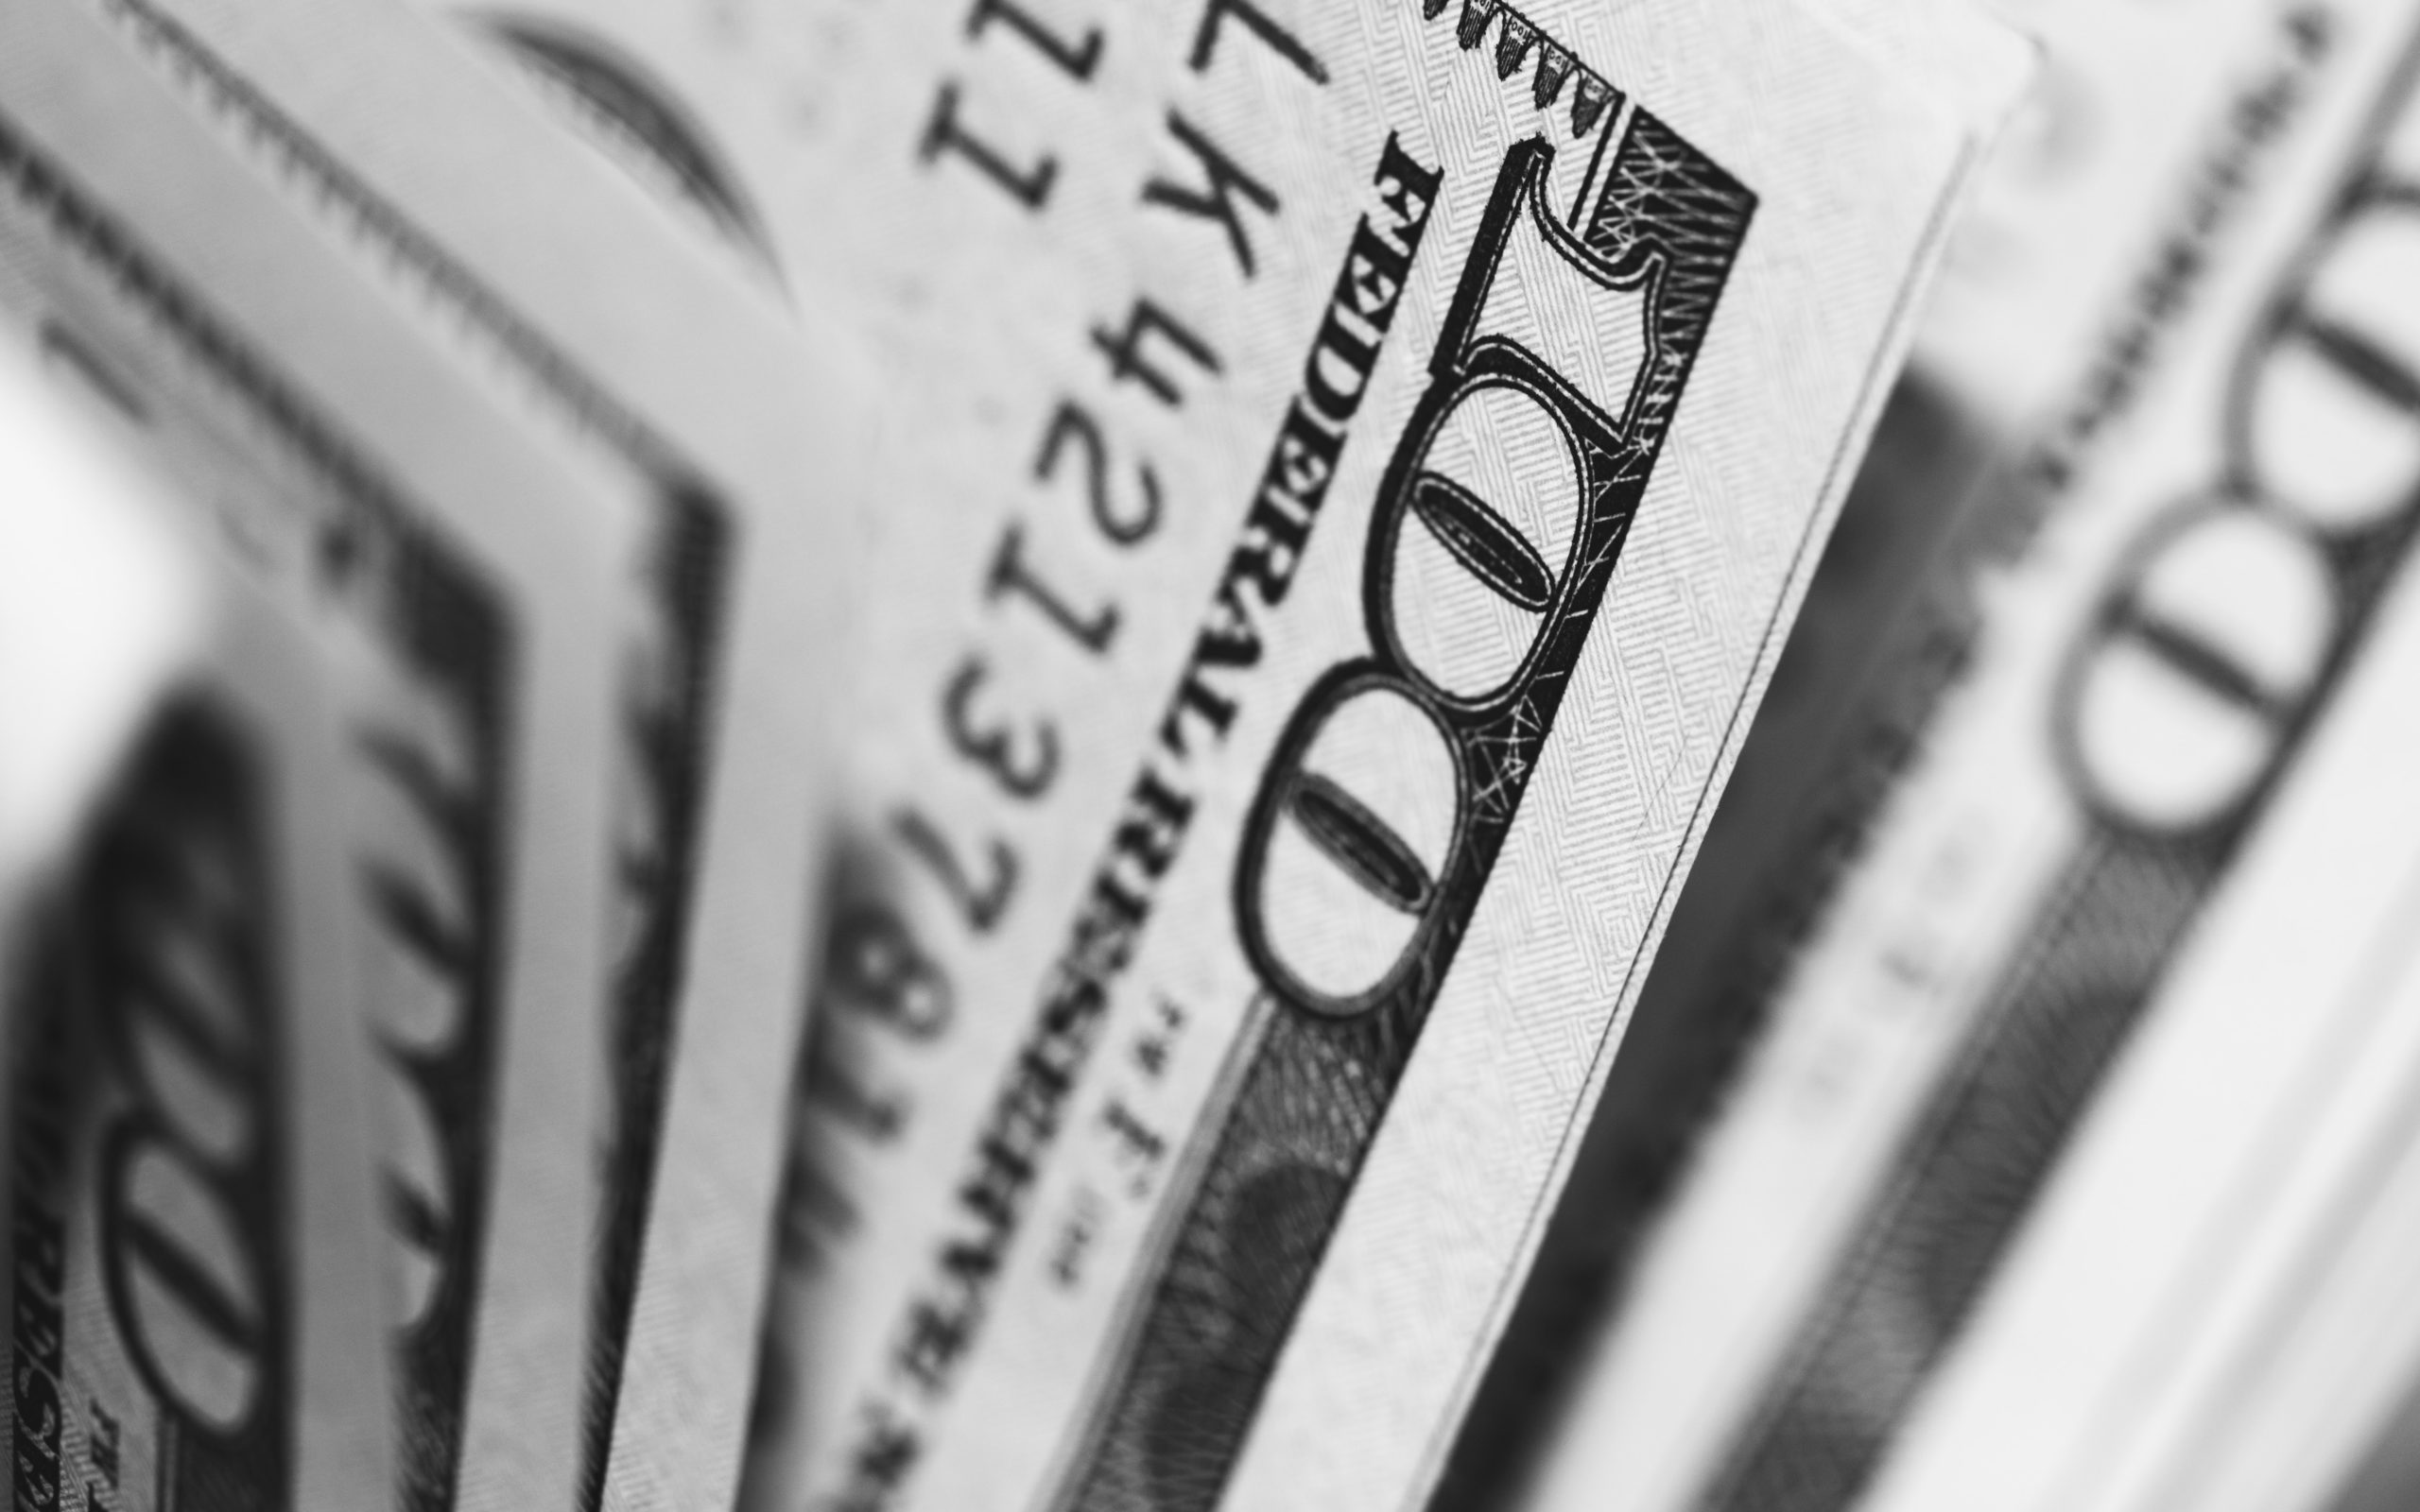 آرگو بلاکچین کو دیوالیہ پن سے بچنے کے لیے گلیکسی ڈیجیٹل سے 100 ملین ڈالر کا بیل آؤٹ ملتا ہے۔